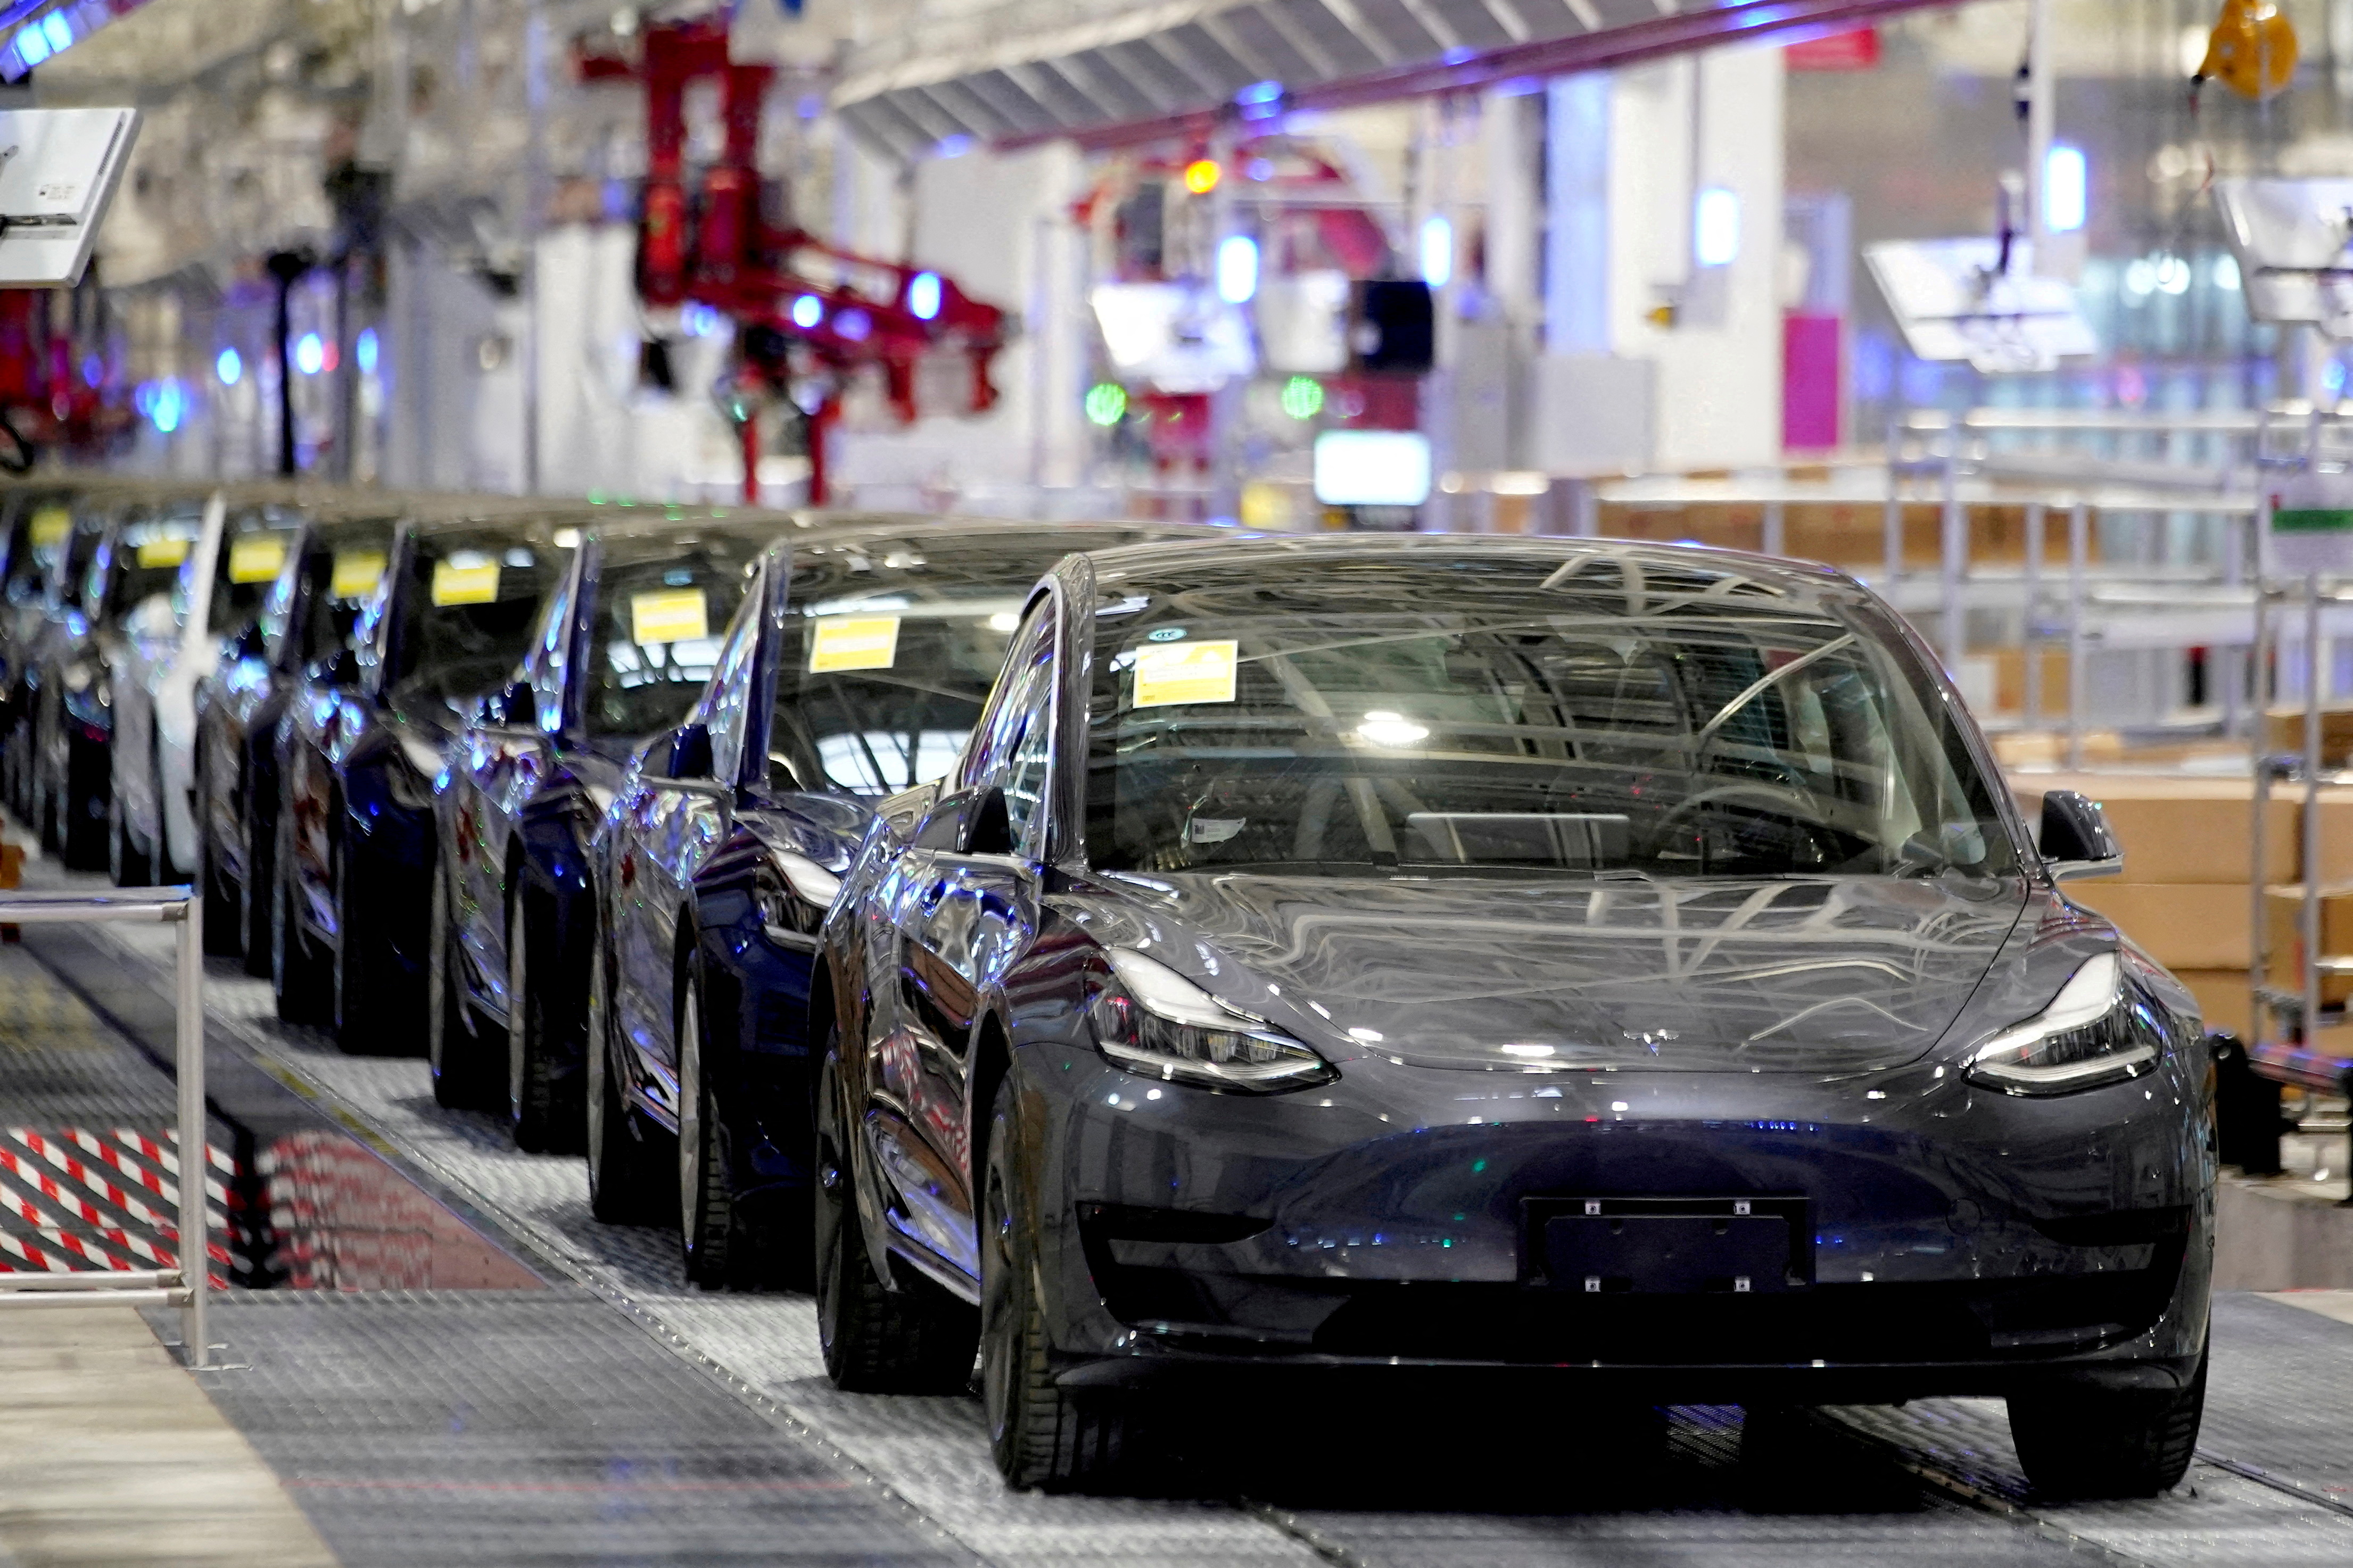 FOTO DE ARCHIVO: Vehículos Model 3 de Tesla fabricados en China se ven durante un evento de entrega en la fábrica del fabricante de automóviles en Shanghái, China el 7 de enero de 2020 (Reuters)